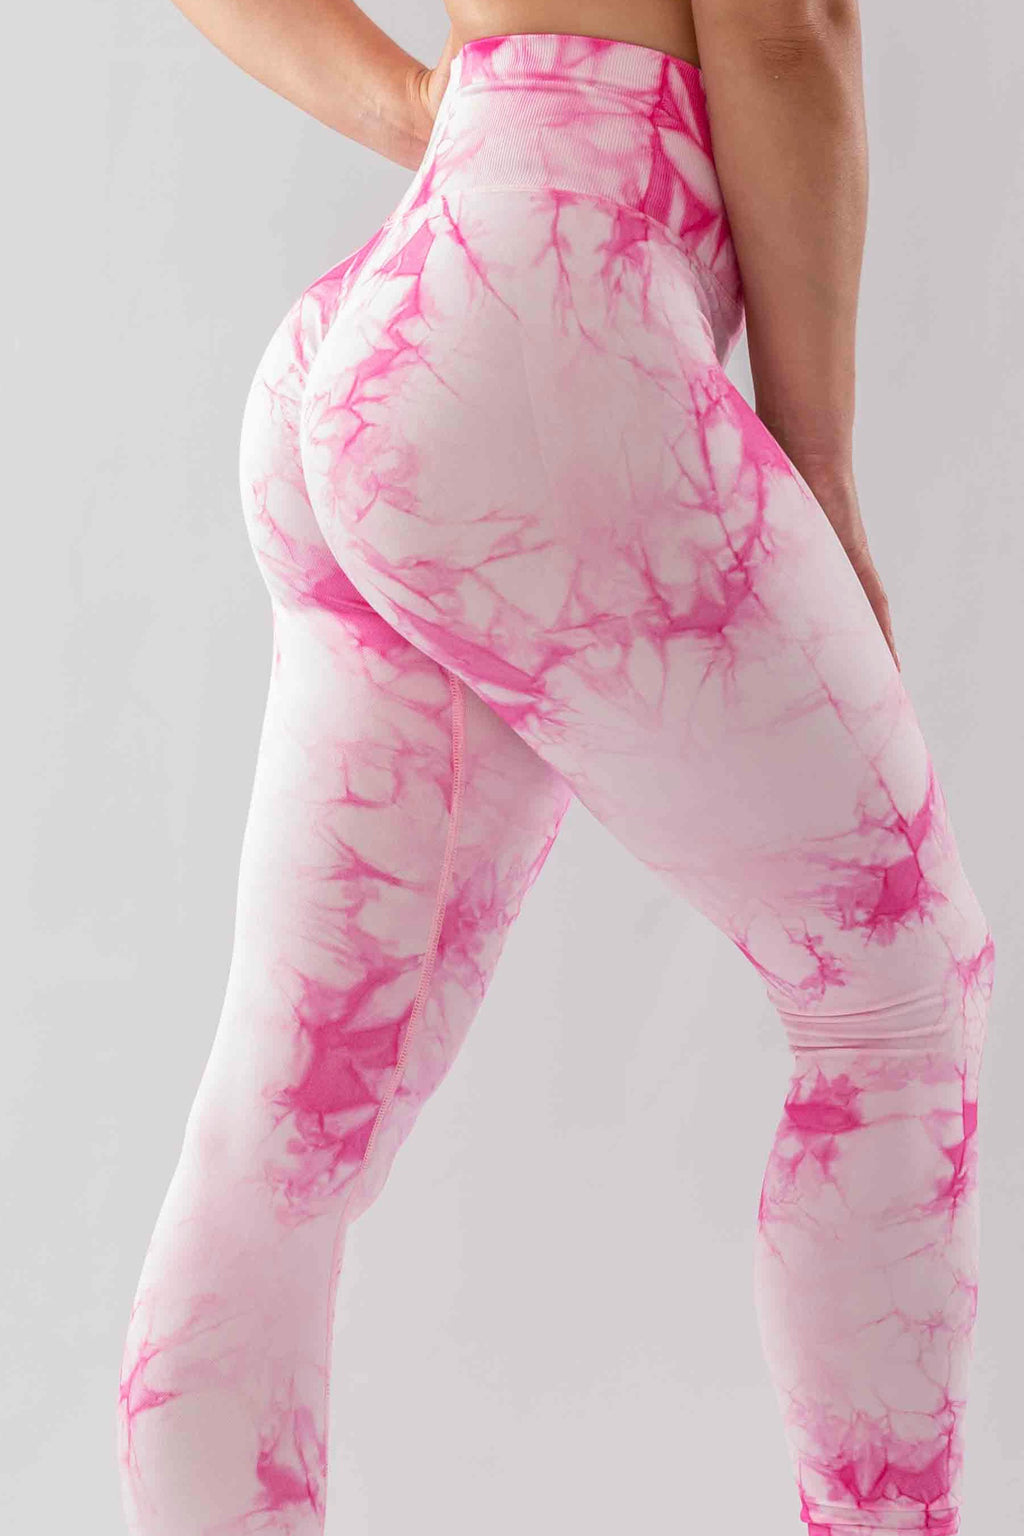 Buy Pink & White Leggings for Women by Bitterlime Online